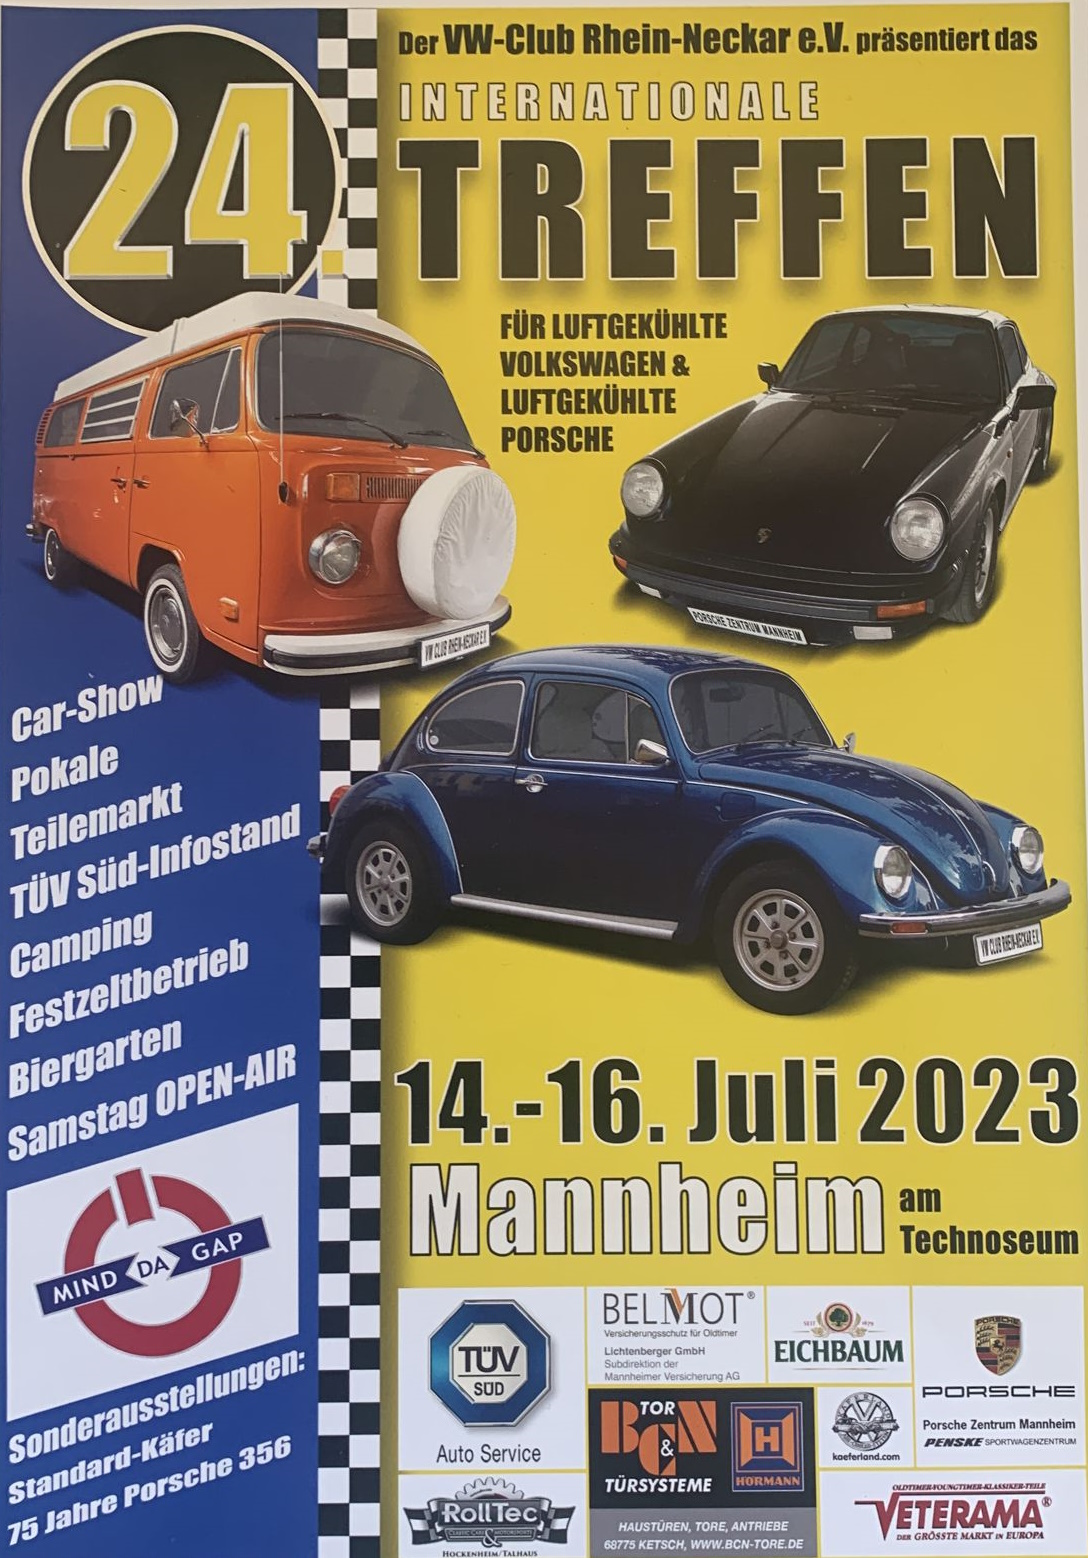 Mind Da Gap beim VW Treffen in Mannheim